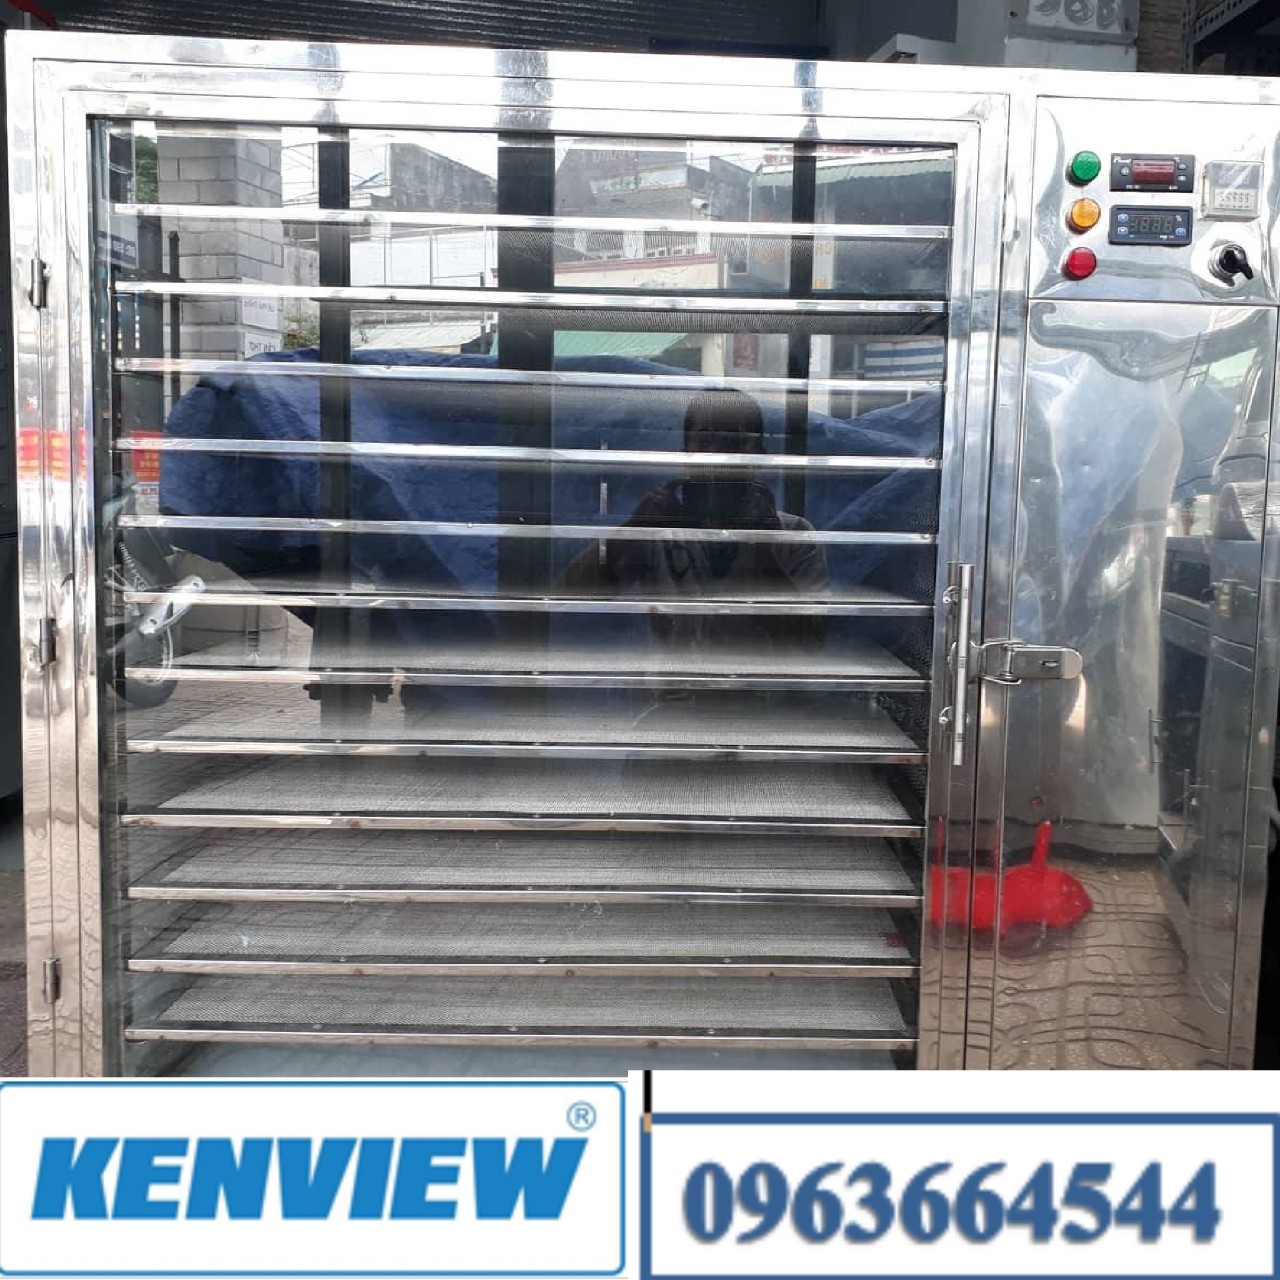 Kenview cung cấp máy sấy cá chạch ở Quảng Ninh - Máy sấy hải sản khô